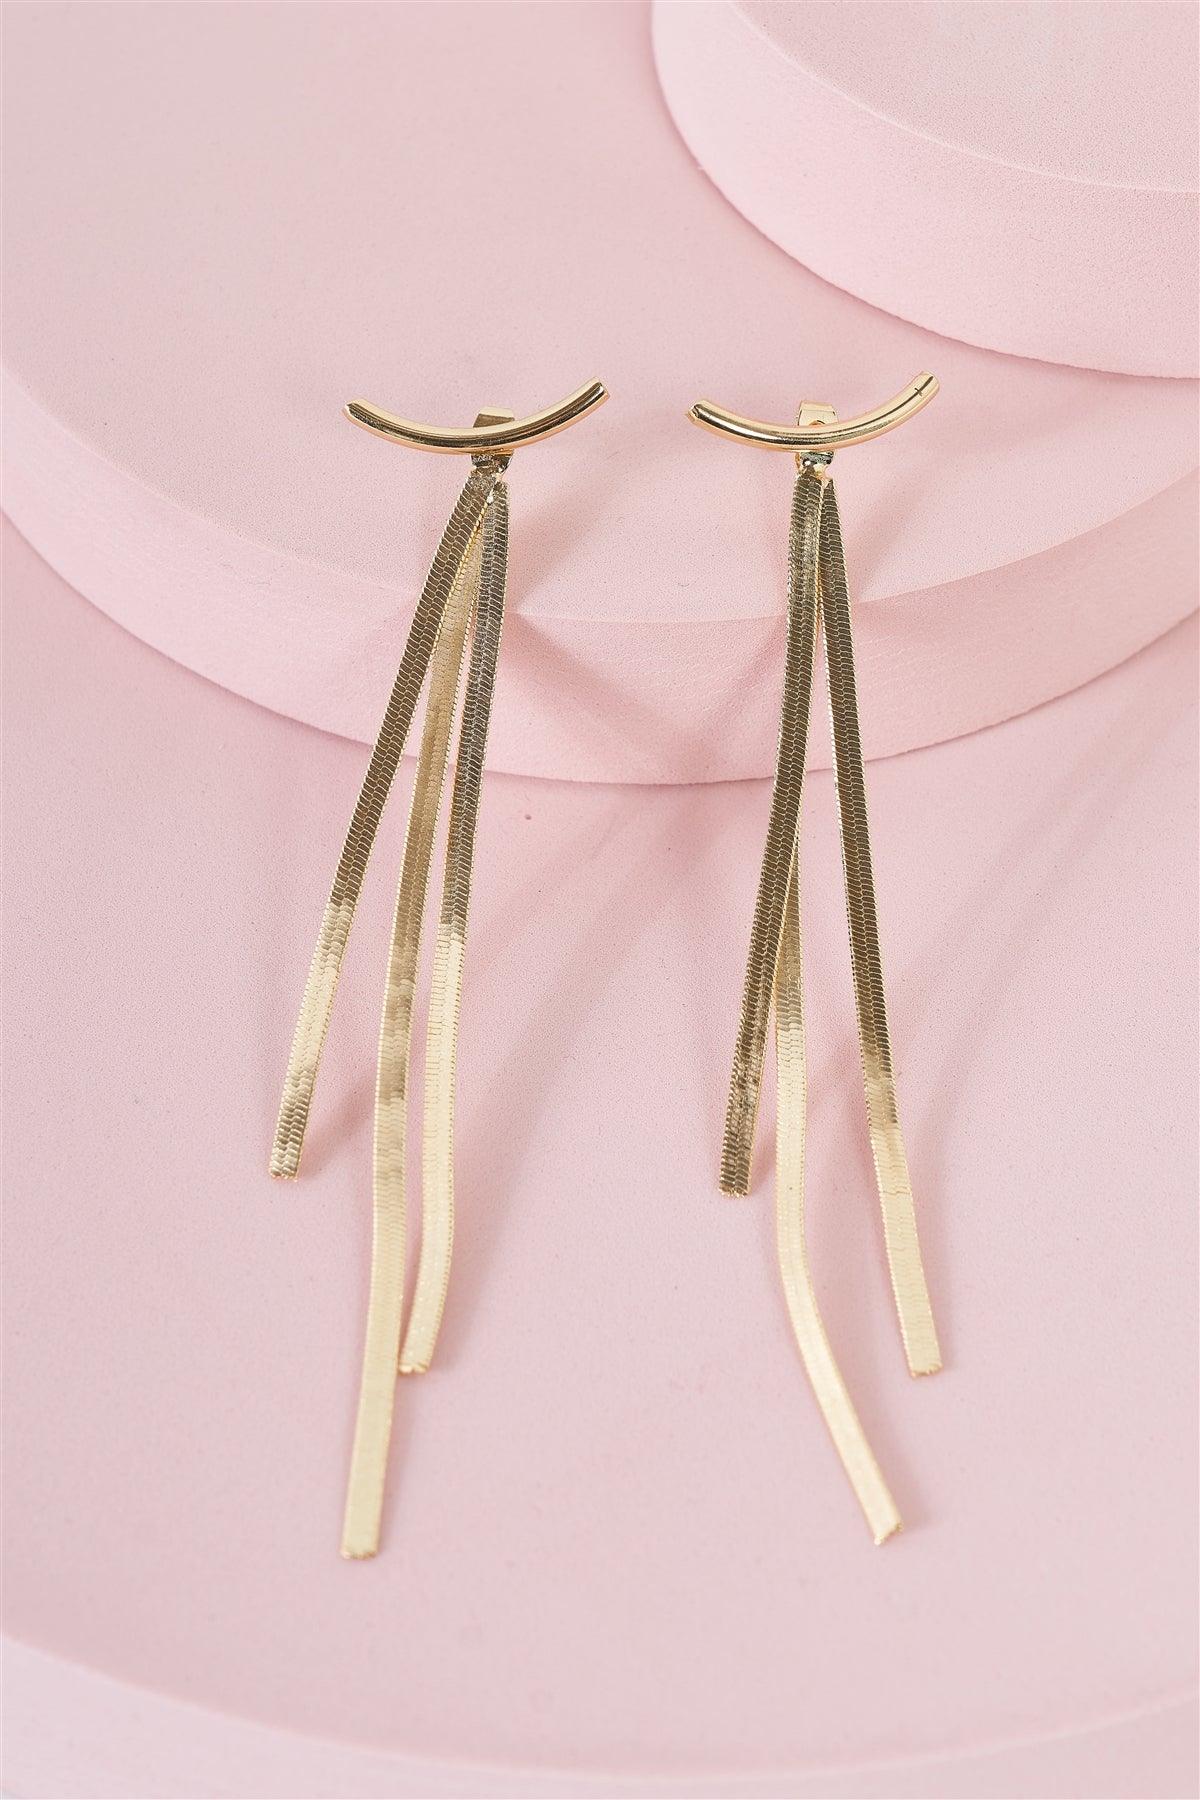 Gold Geometric Long Tassel Snake Chain Ear Jackets Bar Drop Earrings /3 Pairs